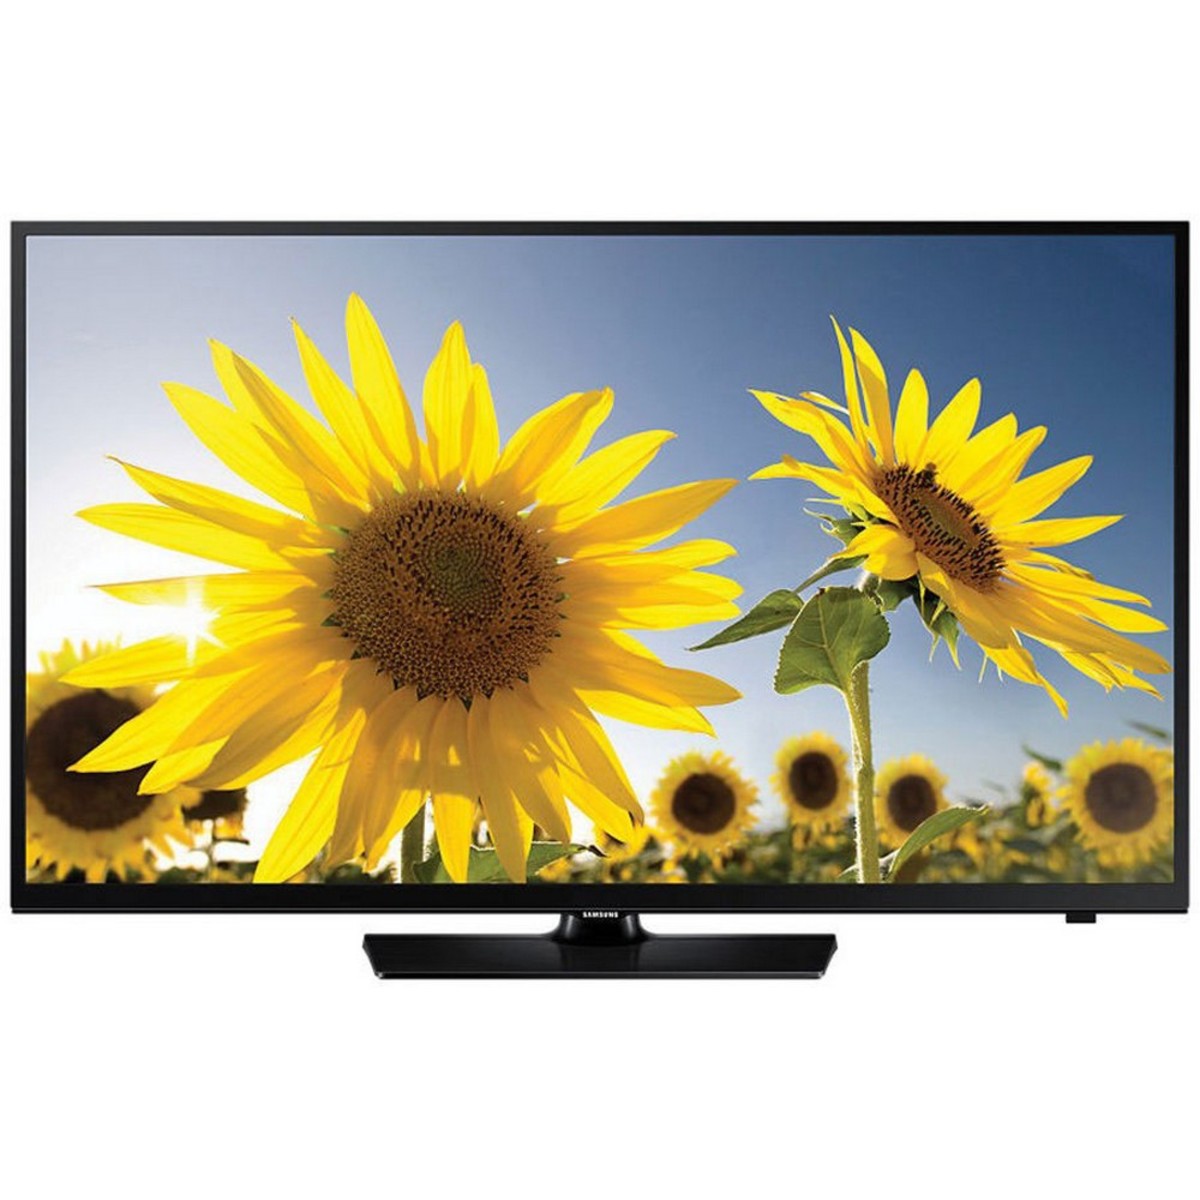 Samsung Smart LED TV 40H4203 40inch